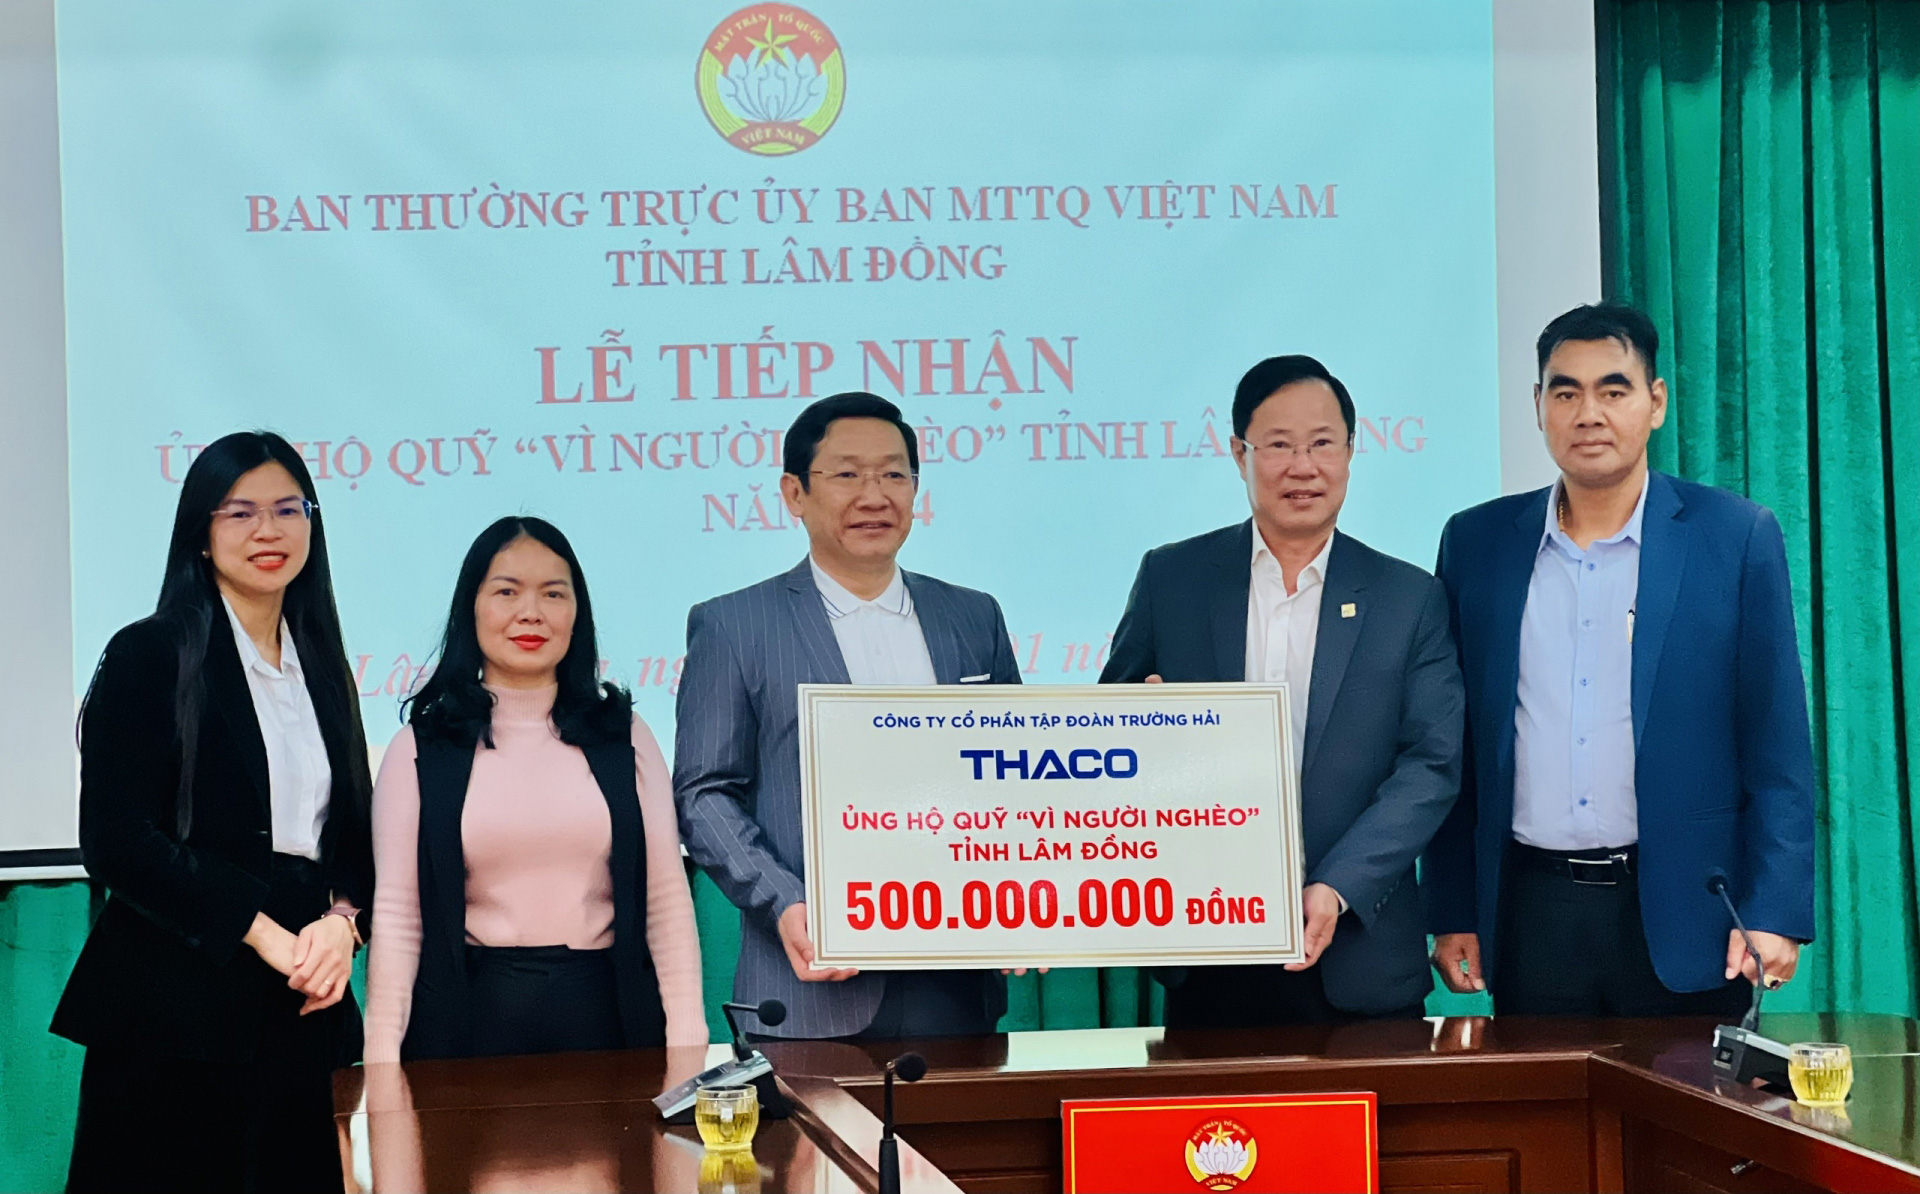 Đại diện Ủy ban MTTQ tỉnh tiếp nhận 500 triêu đồng từ tấm lòng, nghĩa cử của Công ty CP Đầu tư Địa ốc Đại Quang Minh cho Quỹ Vì người nghèo tỉnh